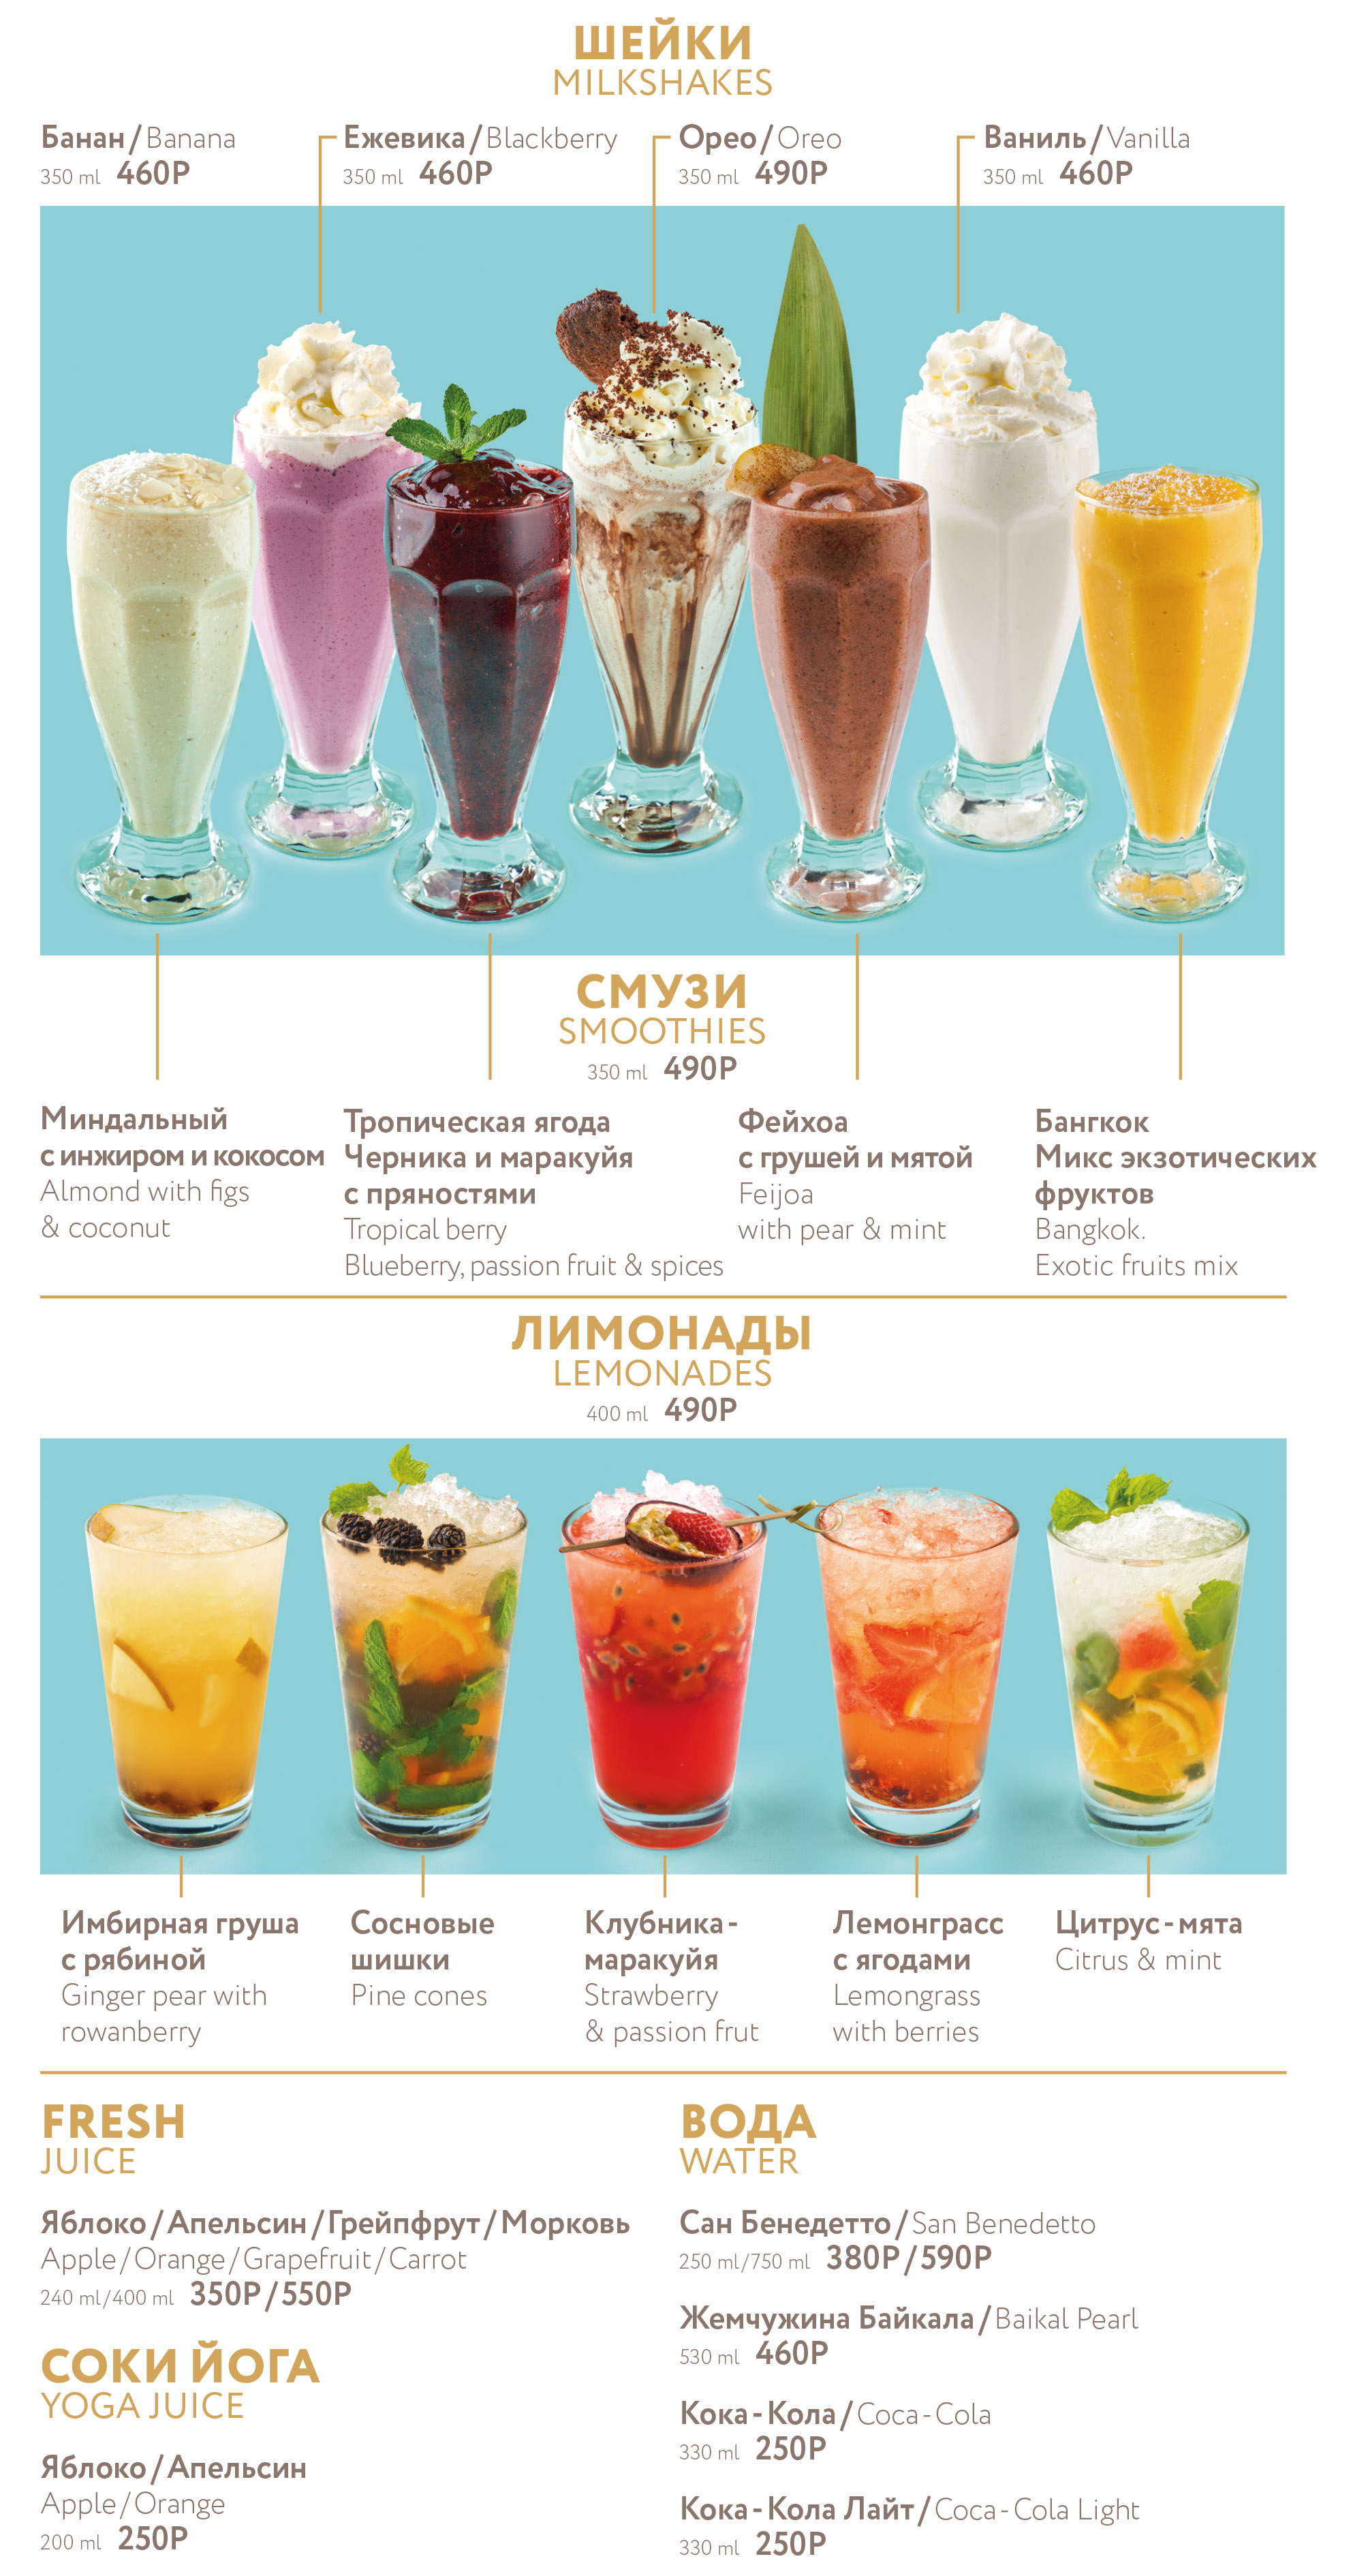 Beverage menu: 4